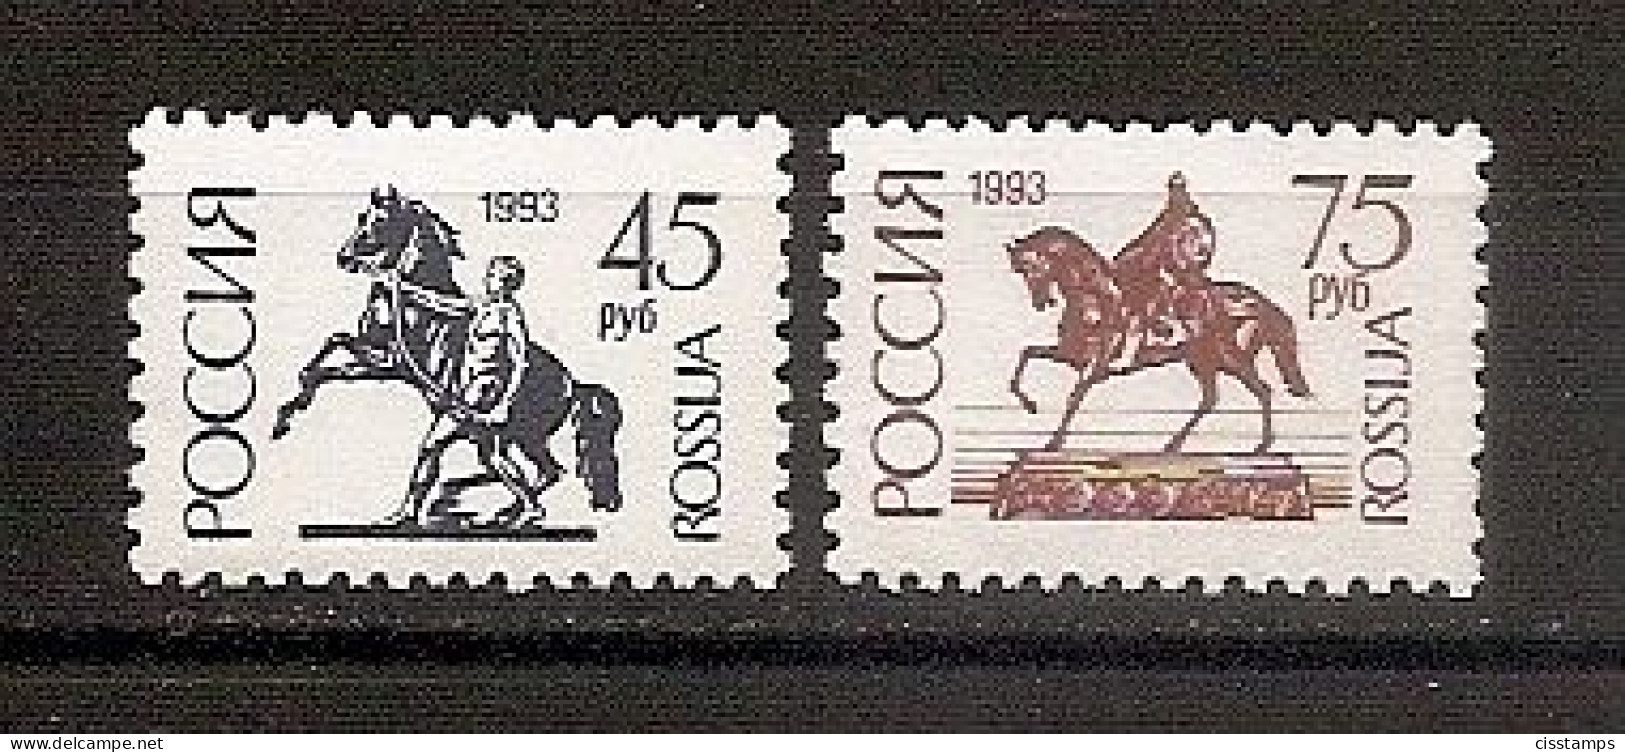 RUSSIA 1993●Definitives Coated Paper●11 1/2:11 3/4●●Freimarken Glanzpapier●Mi 287v-88v MNH - Unused Stamps